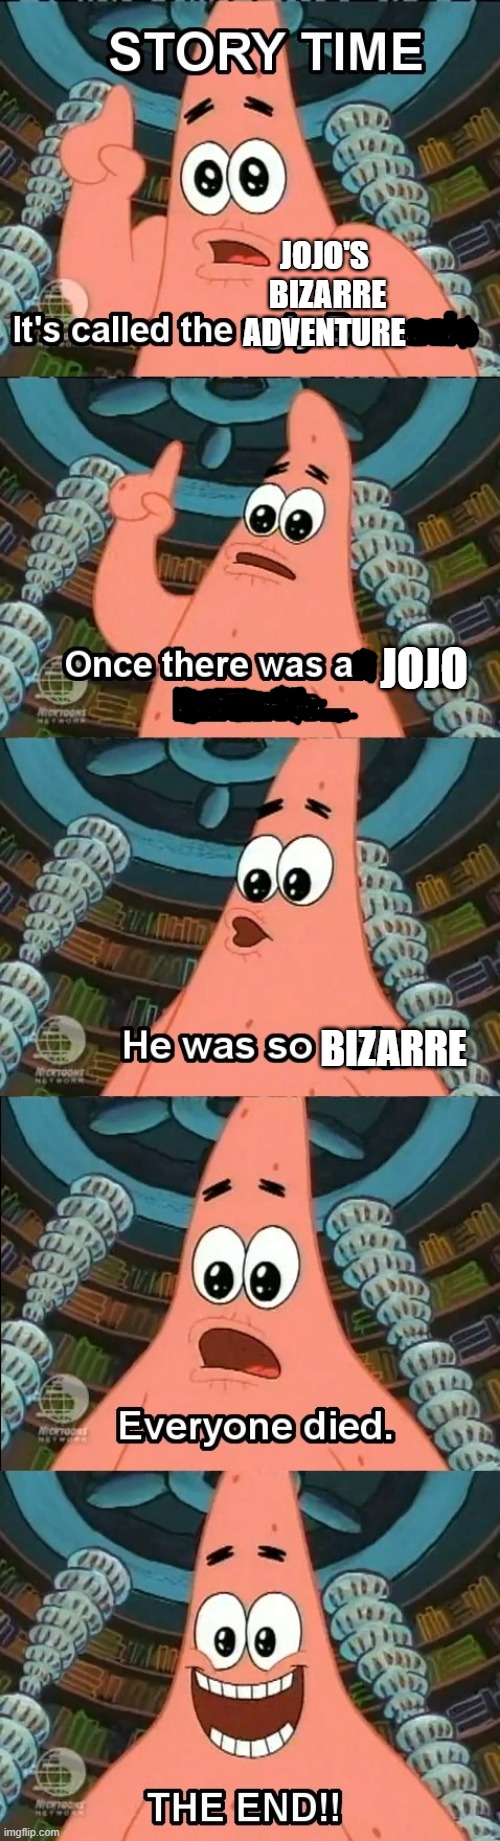 The bizarre barnacle story | JOJO'S 
BIZARRE ADVENTURE; JOJO; BIZARRE | image tagged in spongebob,anime,jojo's bizarre adventure,jojo meme | made w/ Imgflip meme maker